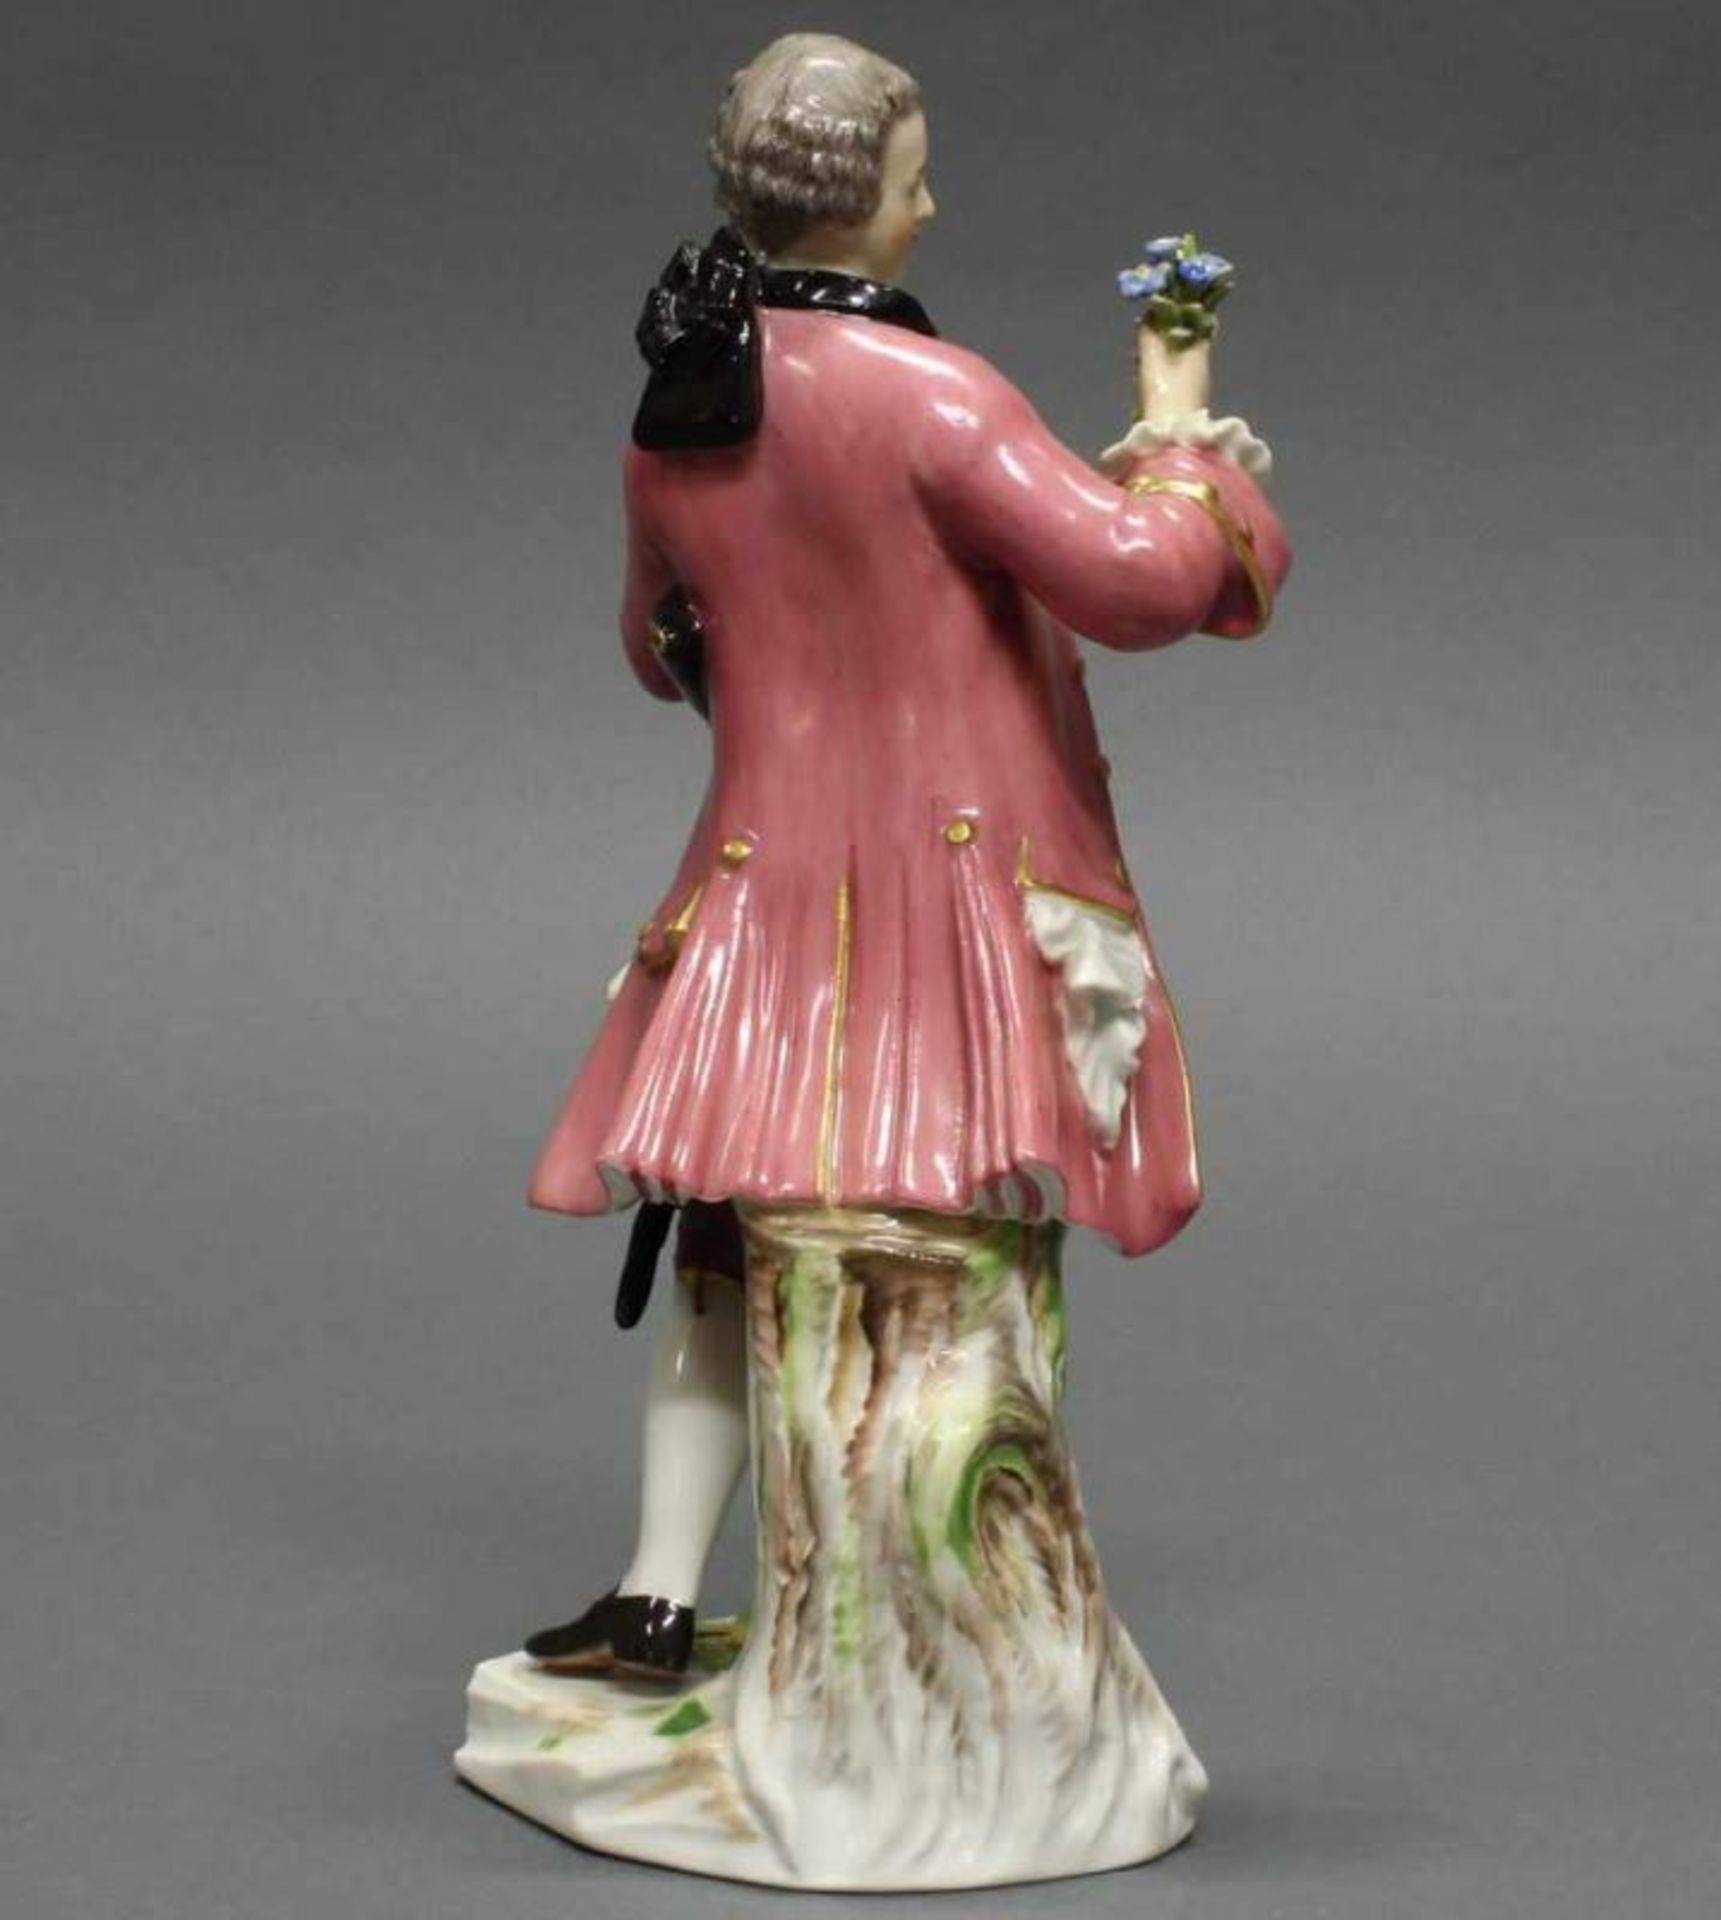 Porzellanfigur, "Kavalier mit Blumen", Meissen, Schwertermarke, 1. Wahl, Modellnummer A 58, - Image 3 of 3